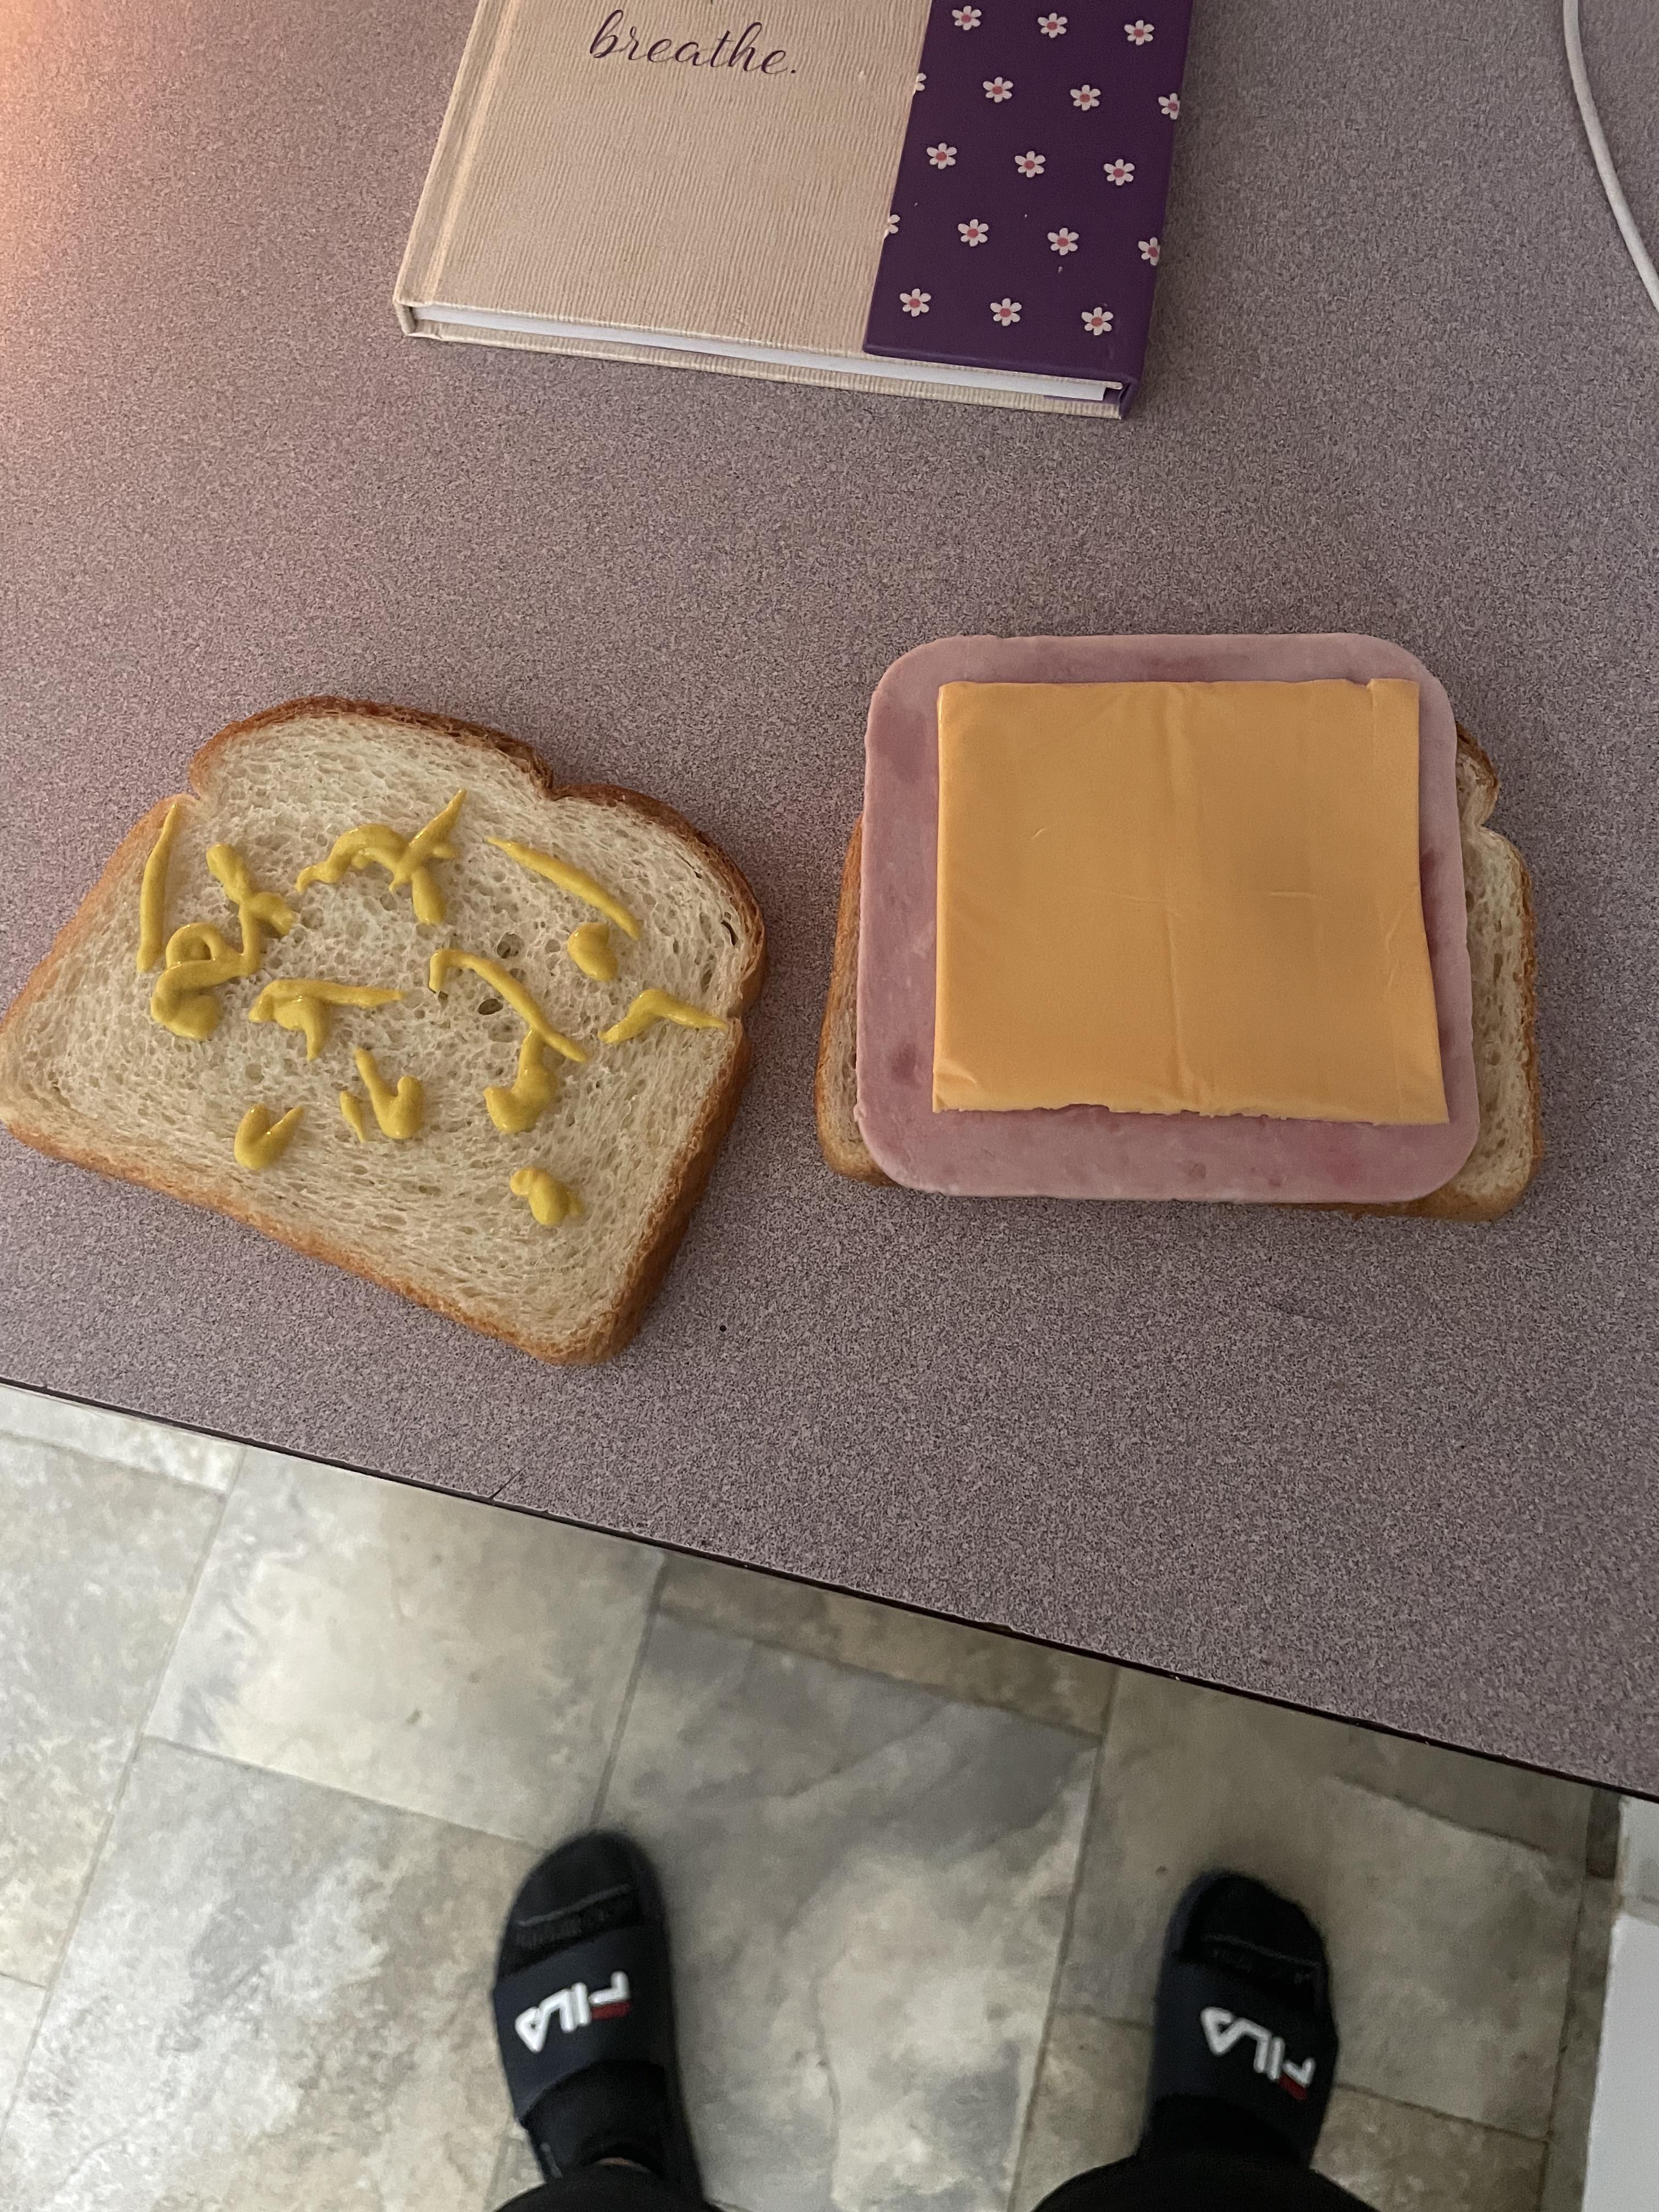 My wife says my sandwich looks sad.